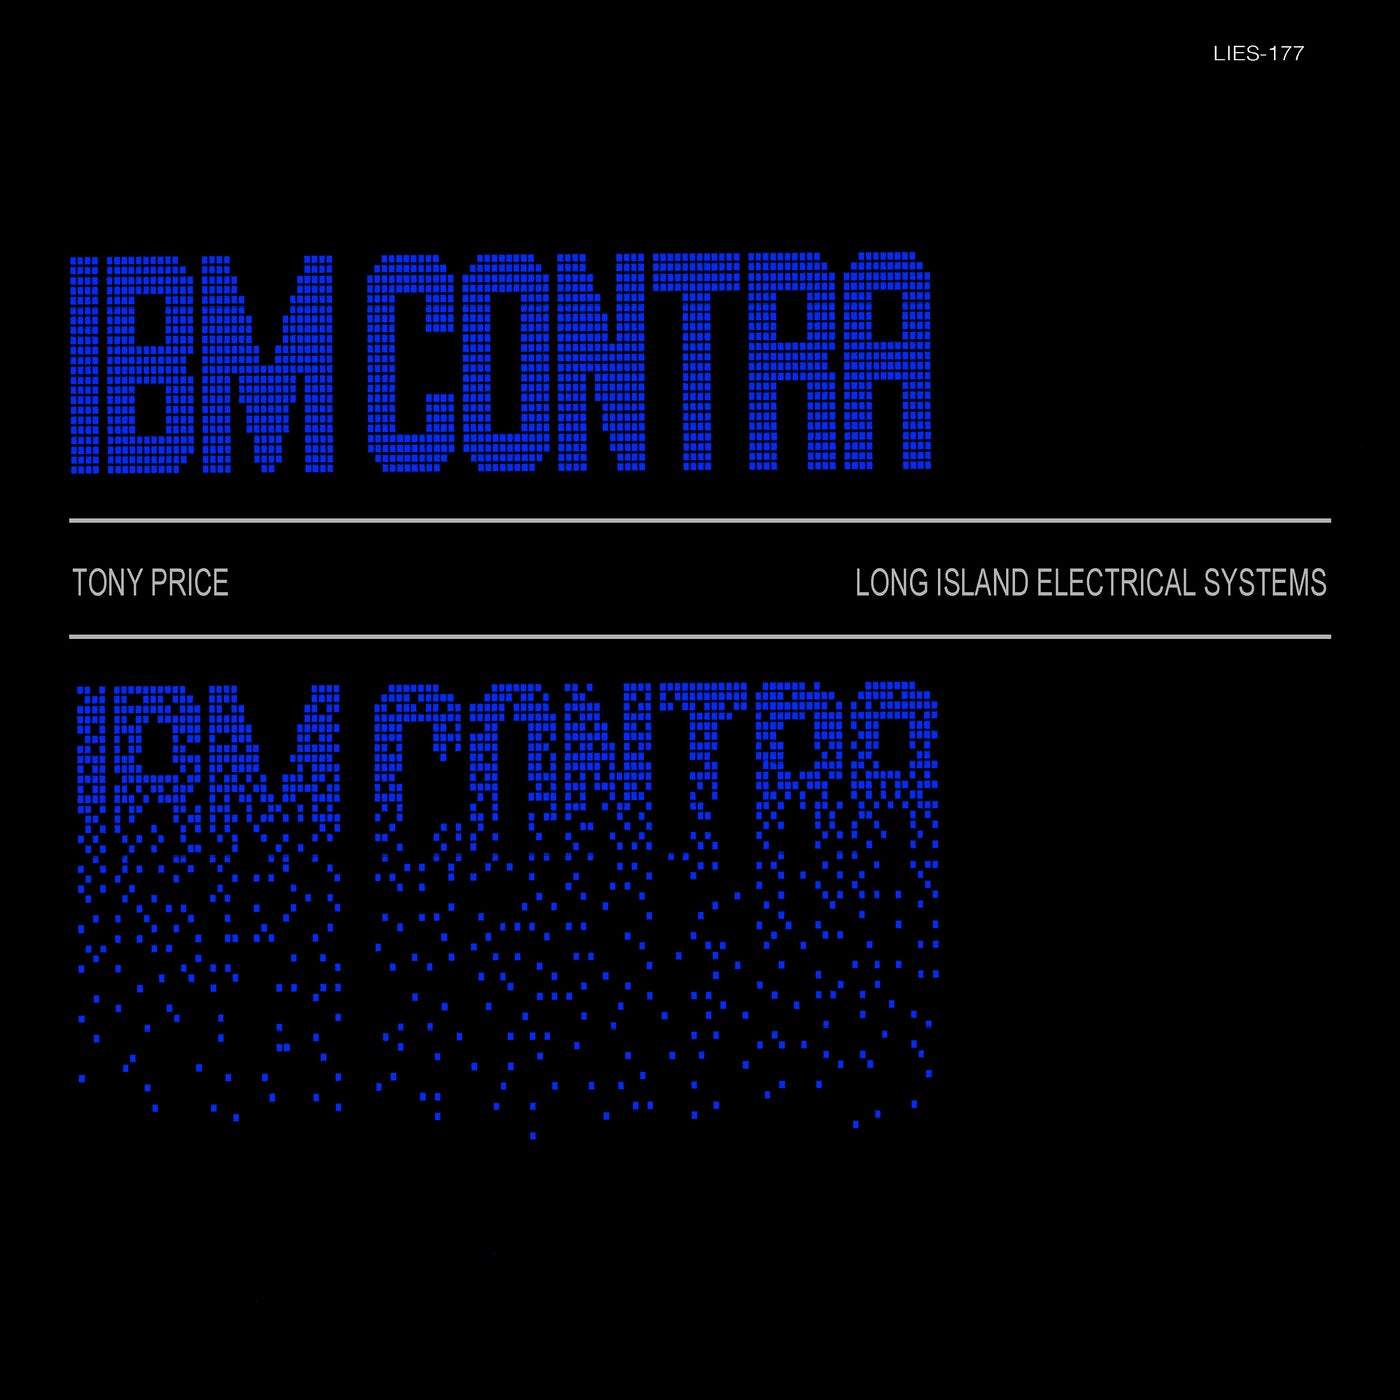 IBM Contra